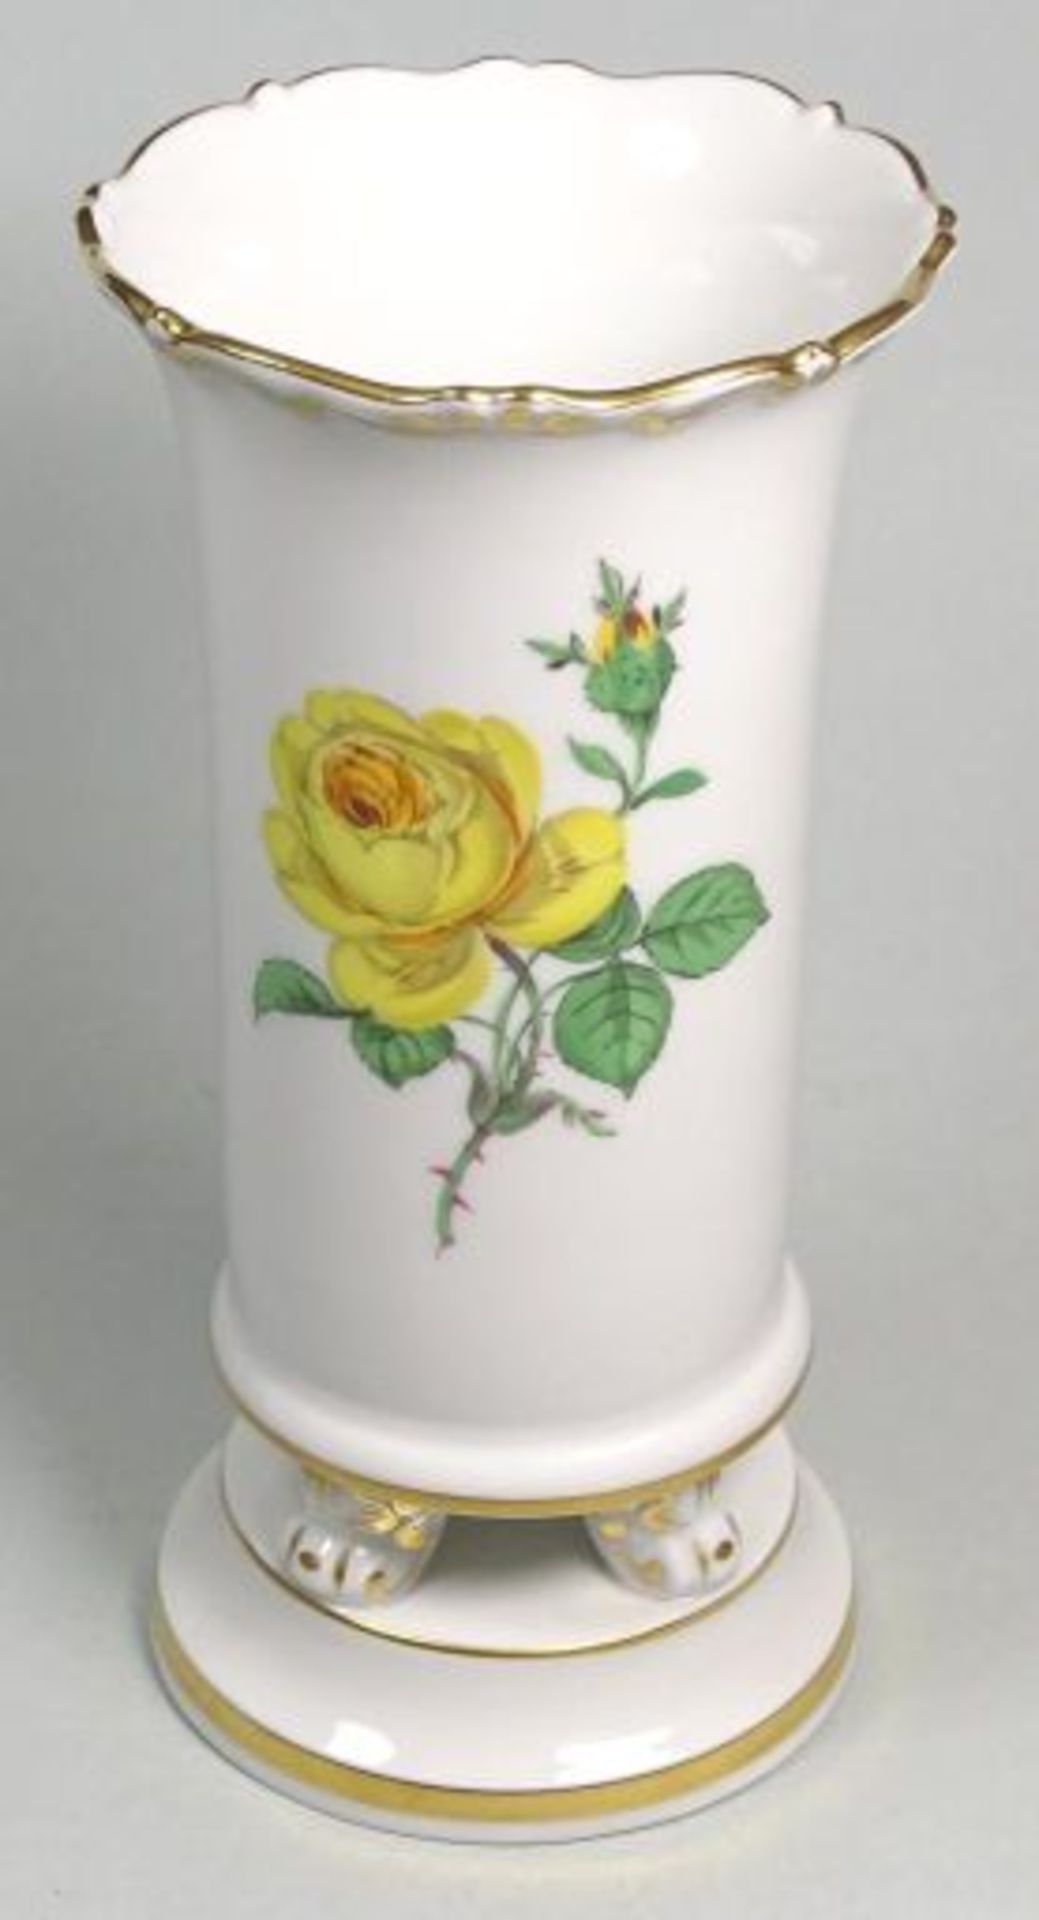 kl. Vase "Meissen" gelbe Rose, Schwertermarke durchschliffen, H-14,5 cm